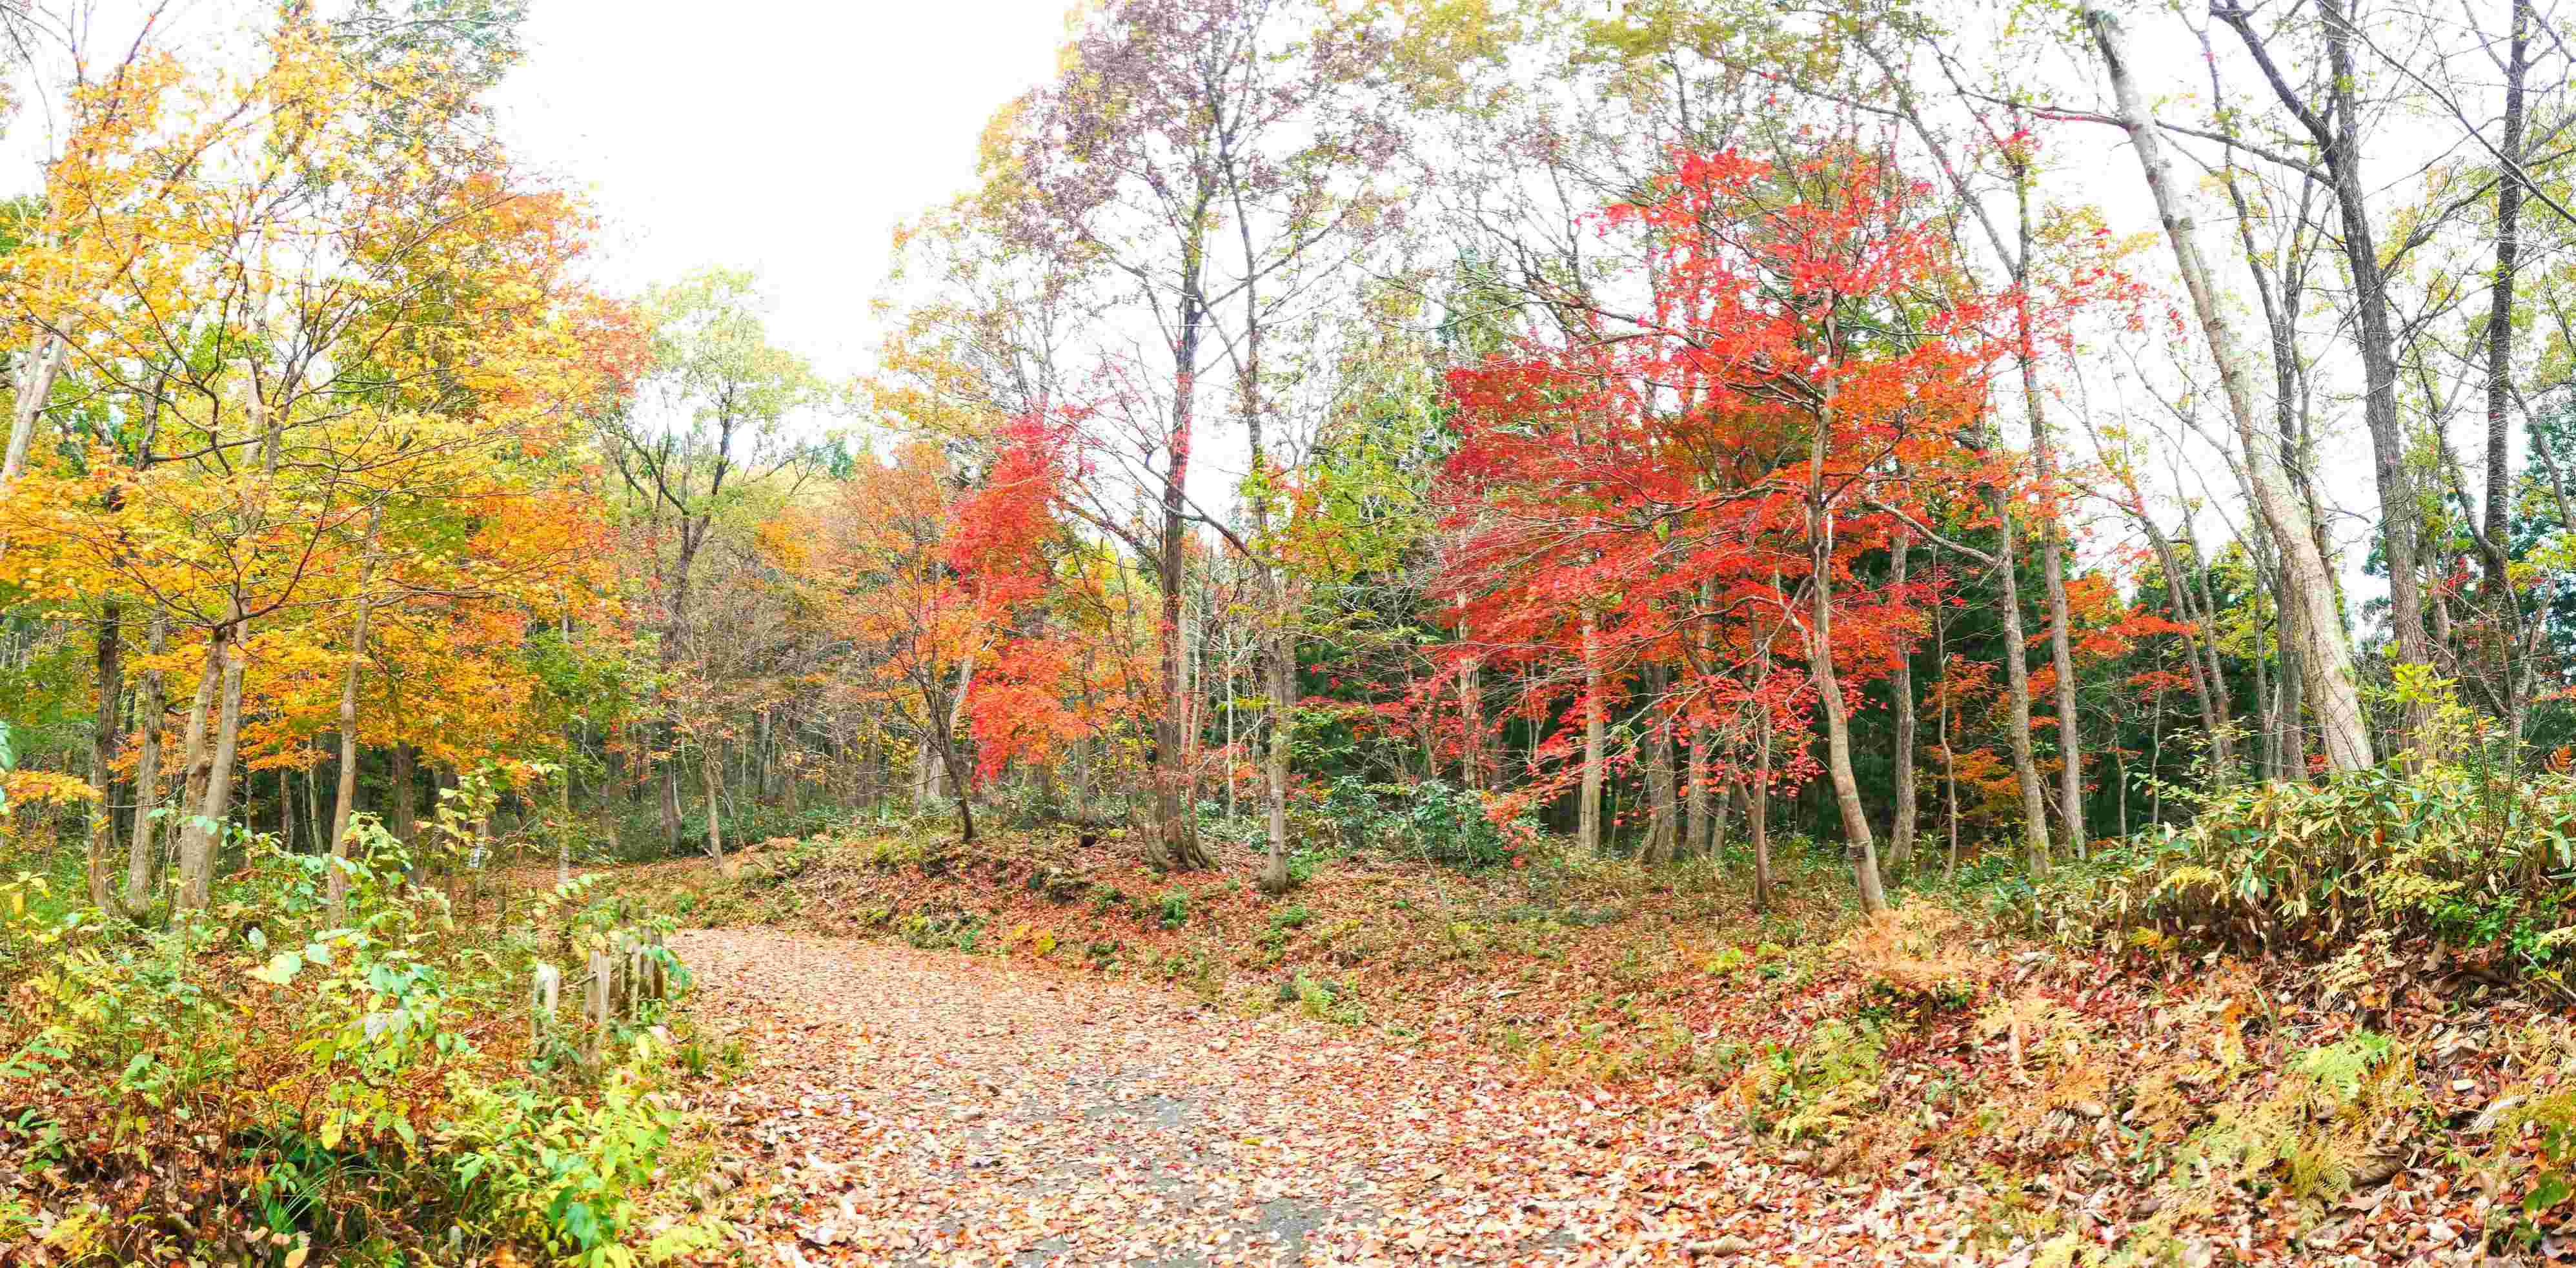  菱ヶ岳登山道入口の紅葉